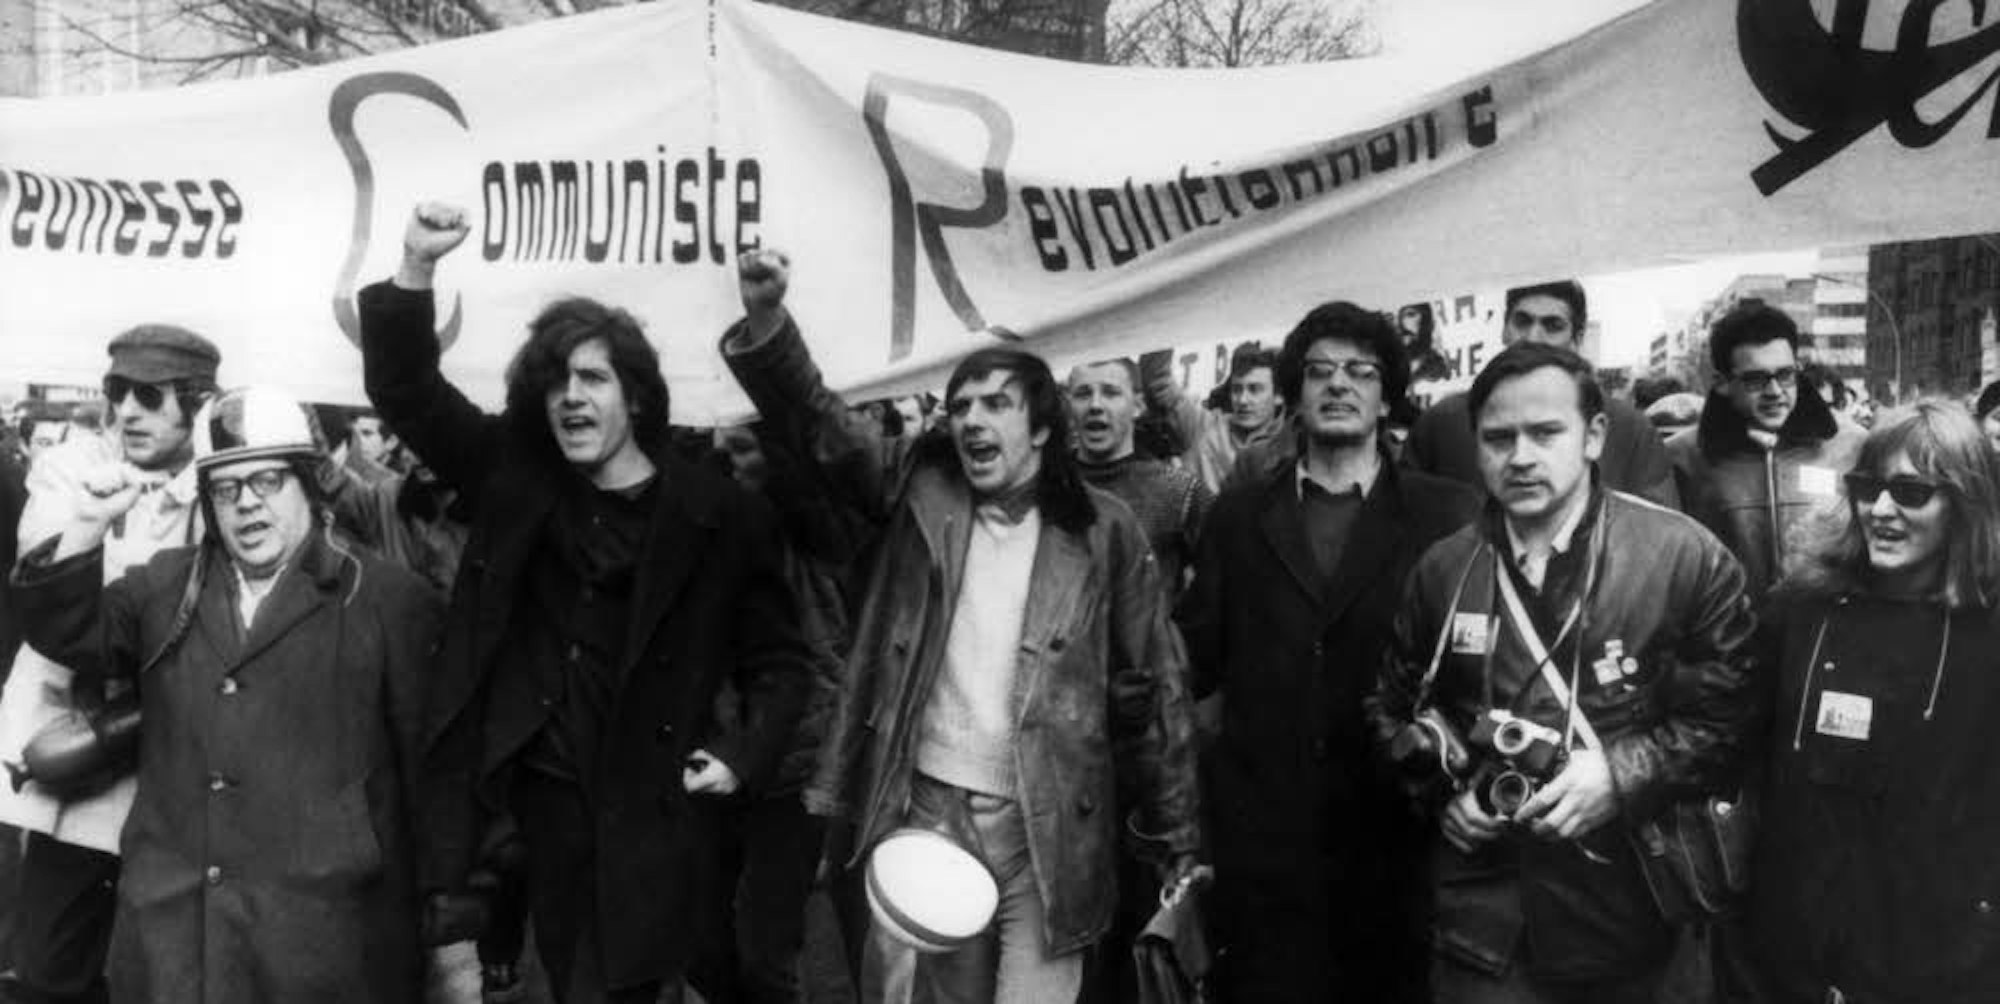 Rudi Dutschke, Studentenführer und Ideologe des SDS mit erhobener Faust an der Spitze eines Demonstrationszuges gegen den Vietnamkrieg.